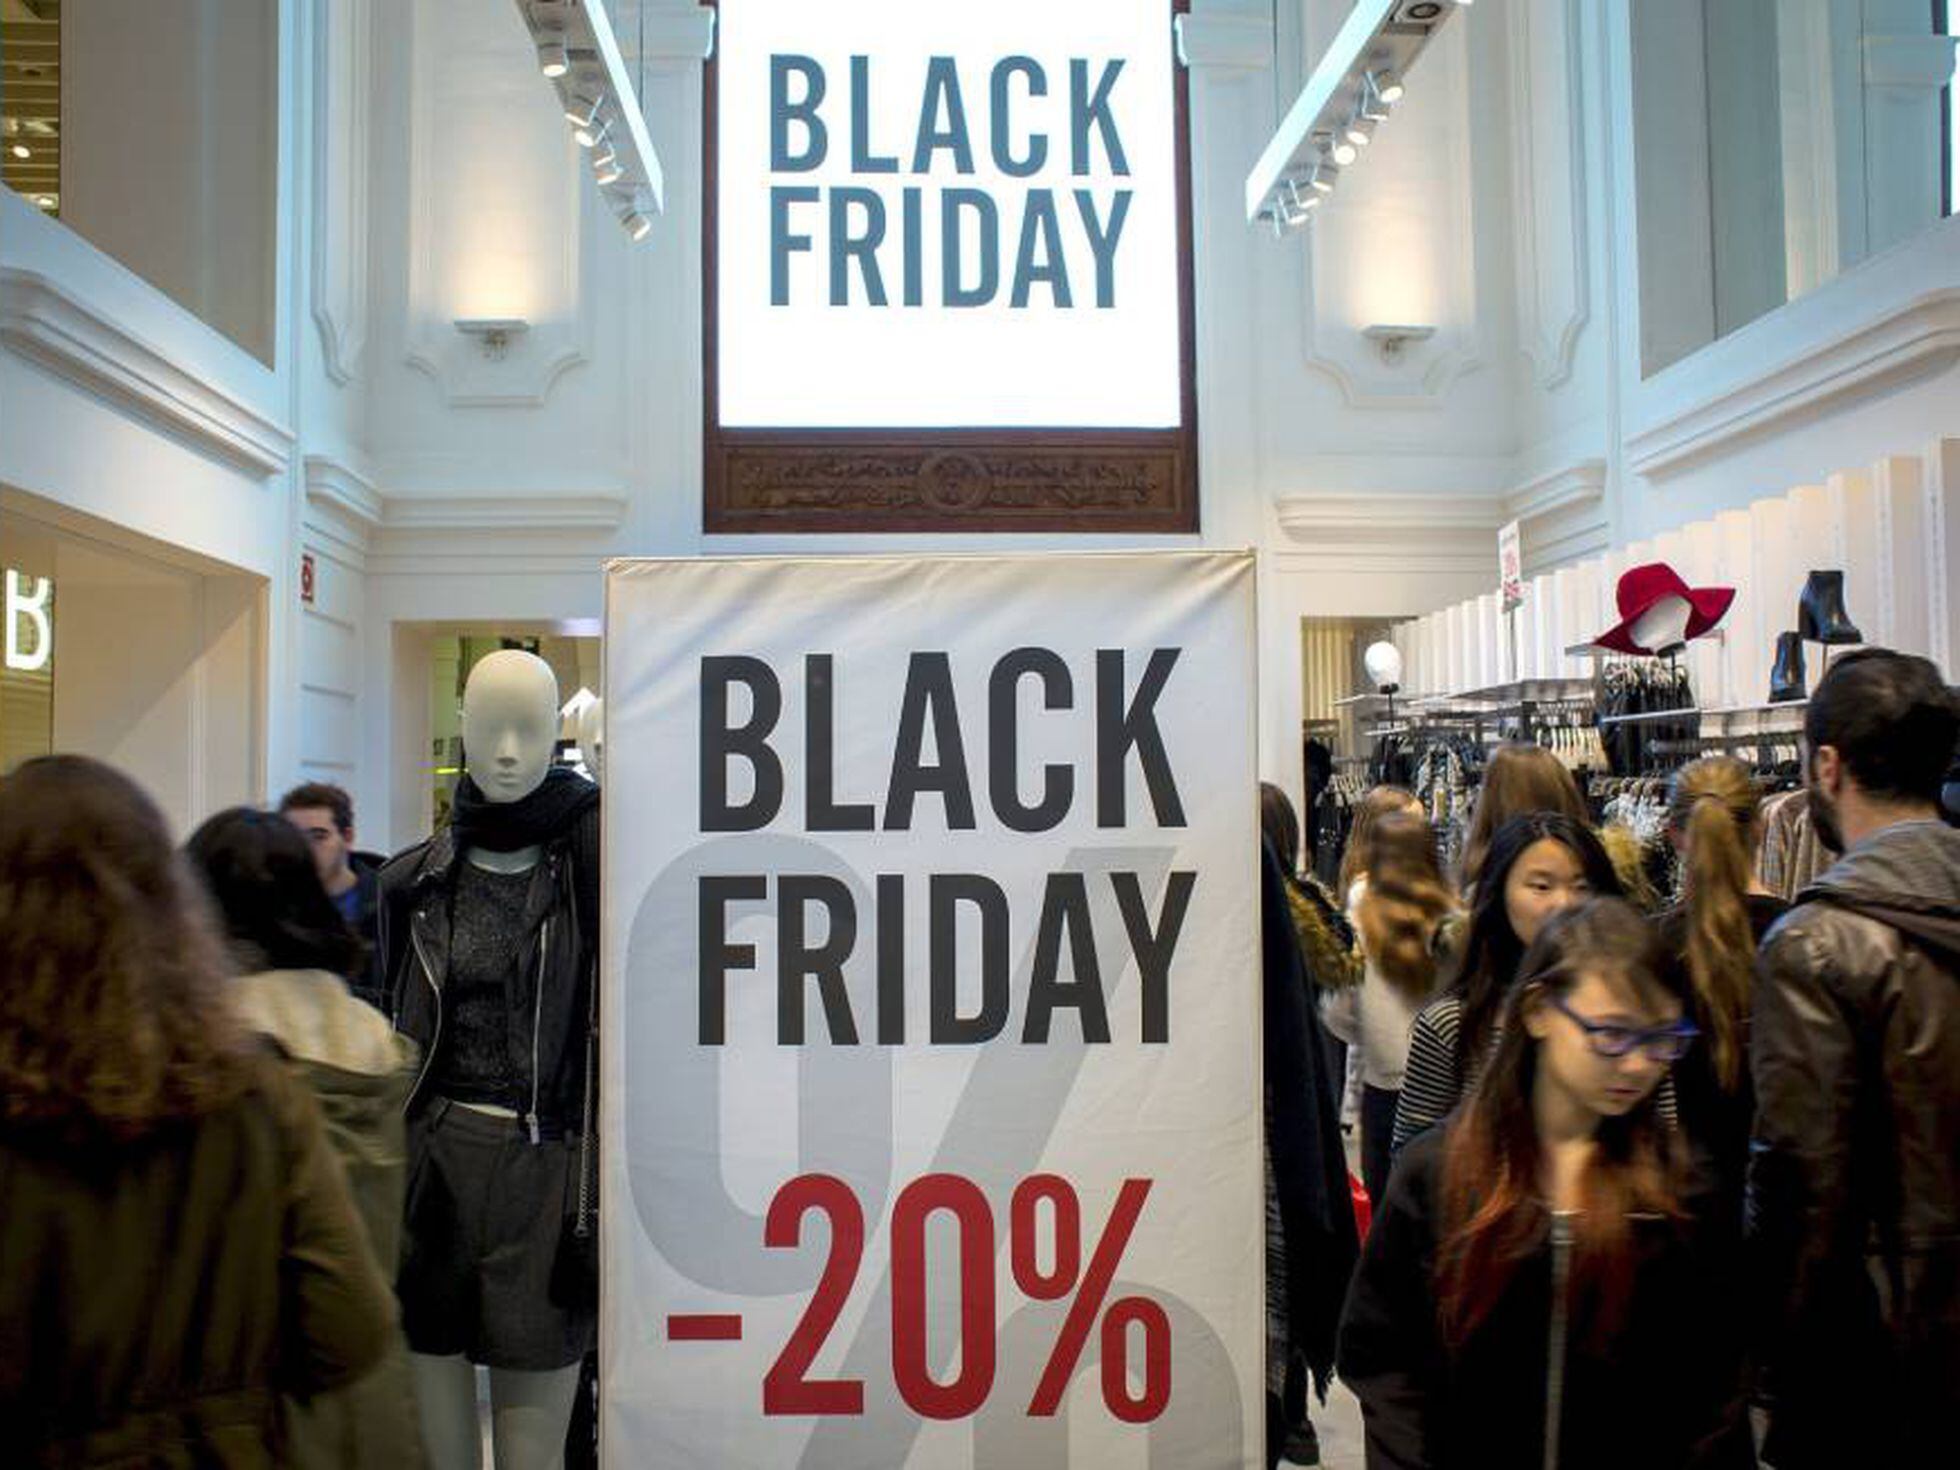 ReclameAqui monitora lojas na Black Friday de 2016 contra 'Black